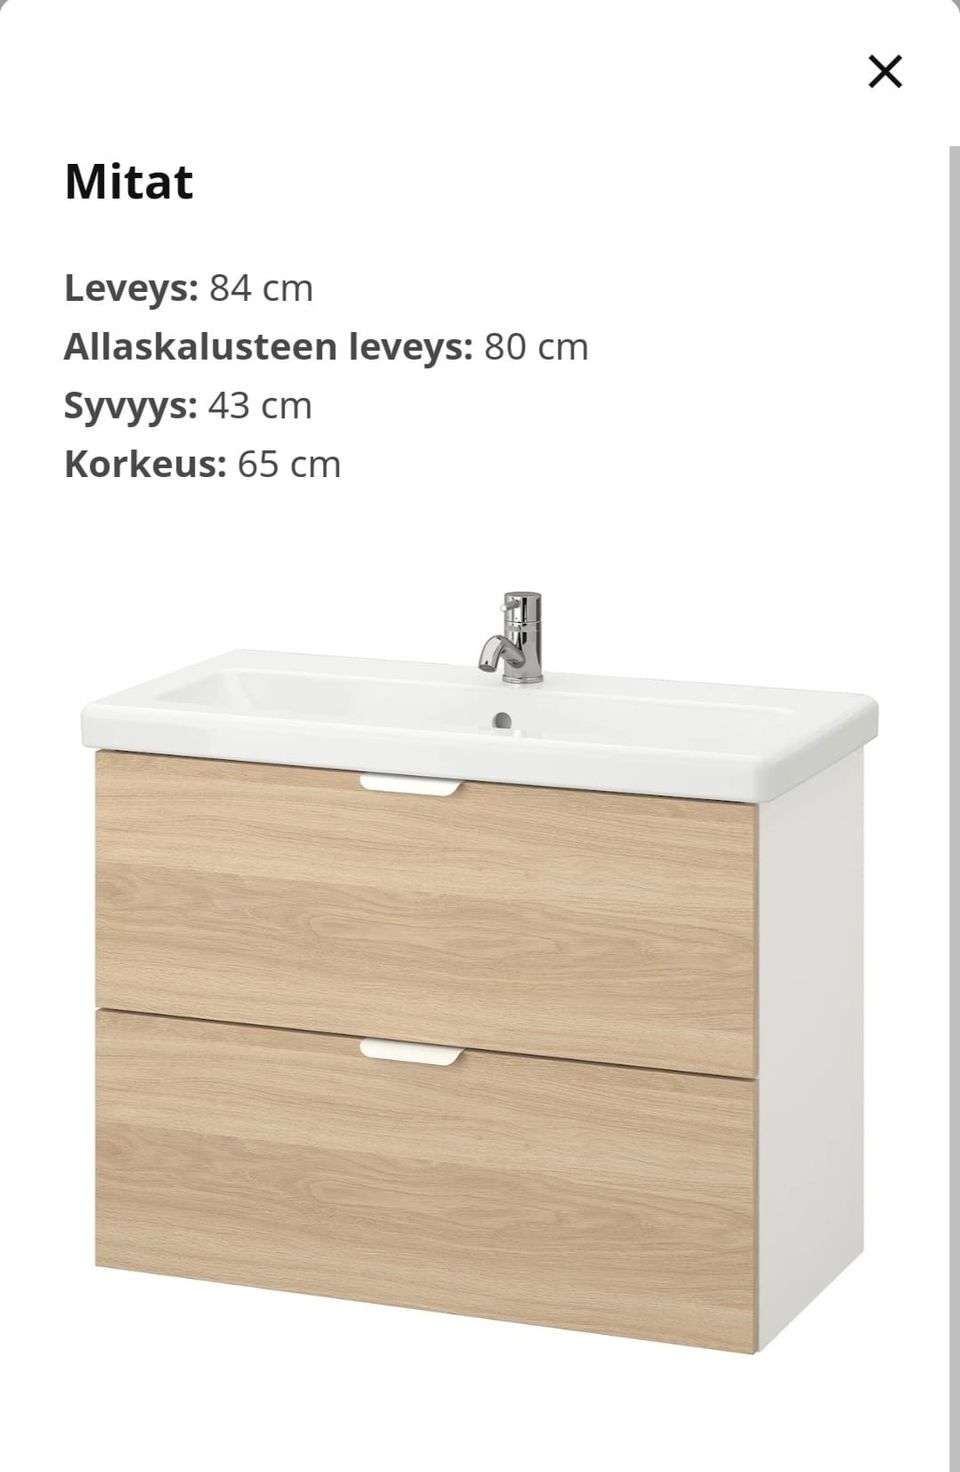 Ikea Enhet/Tvällen 84cm wc / kylpyhuone kalusto